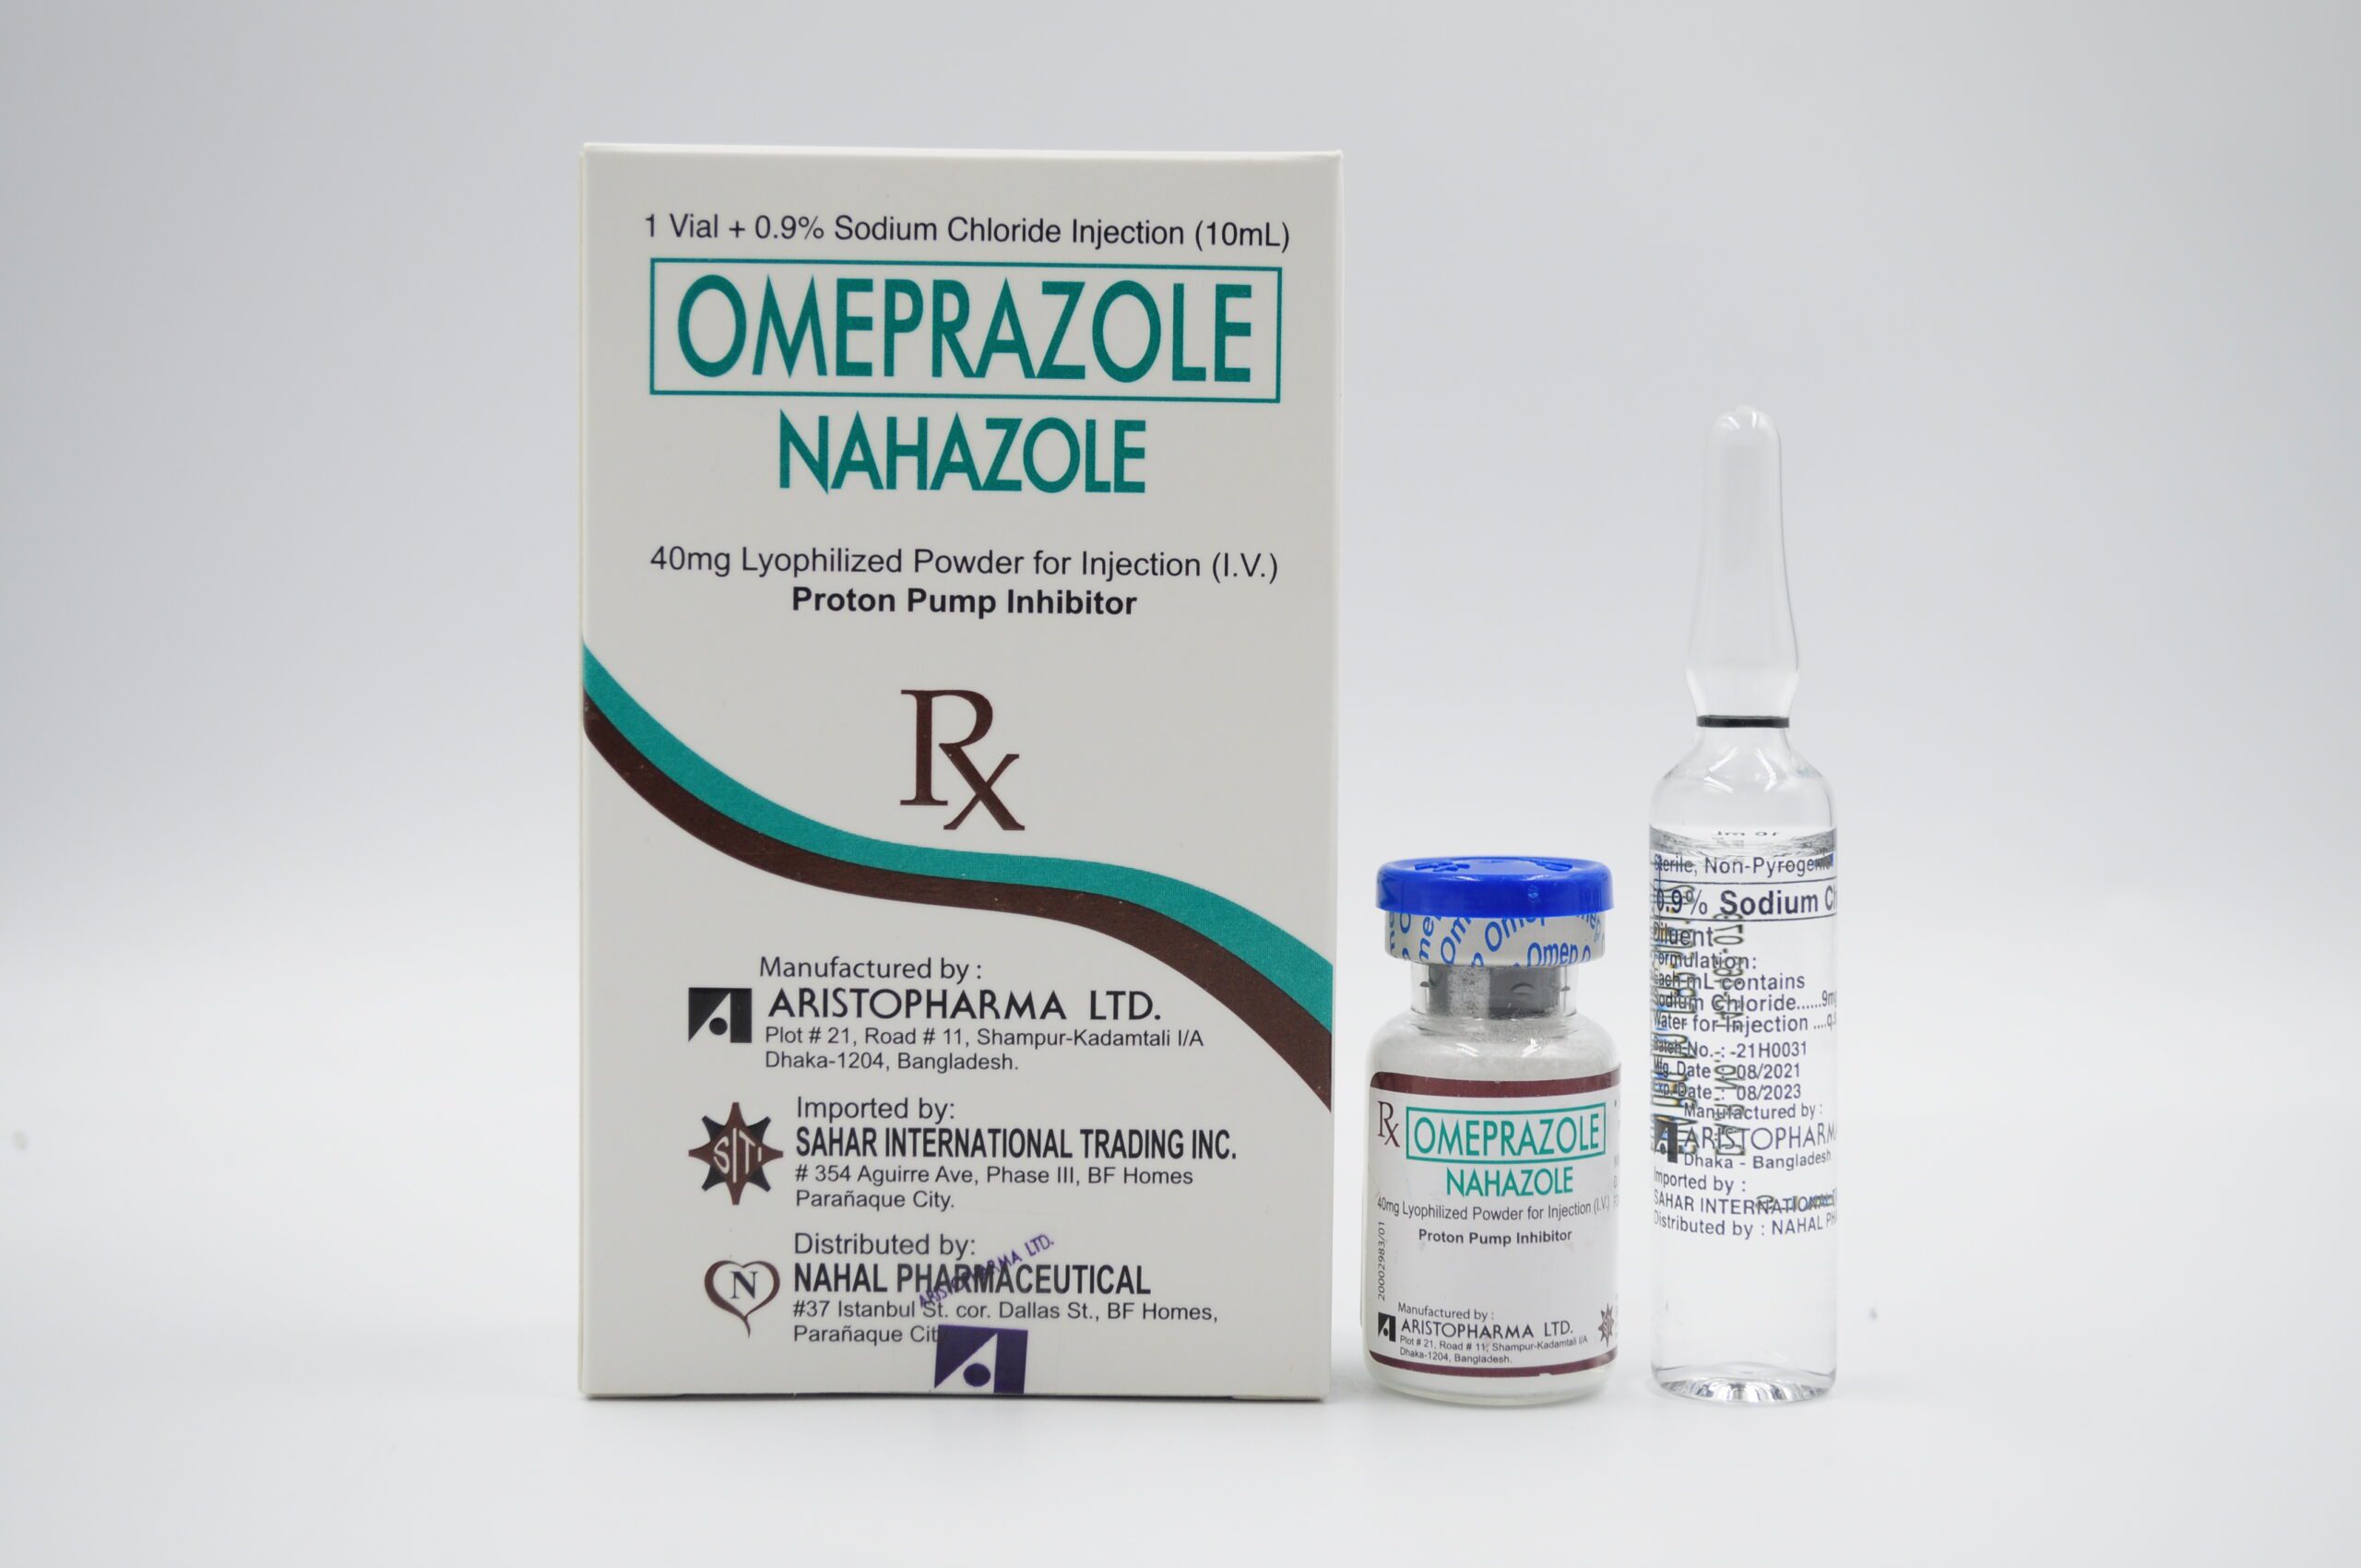 OMEPRAZOLE (NAHAZOLE) 40 mg